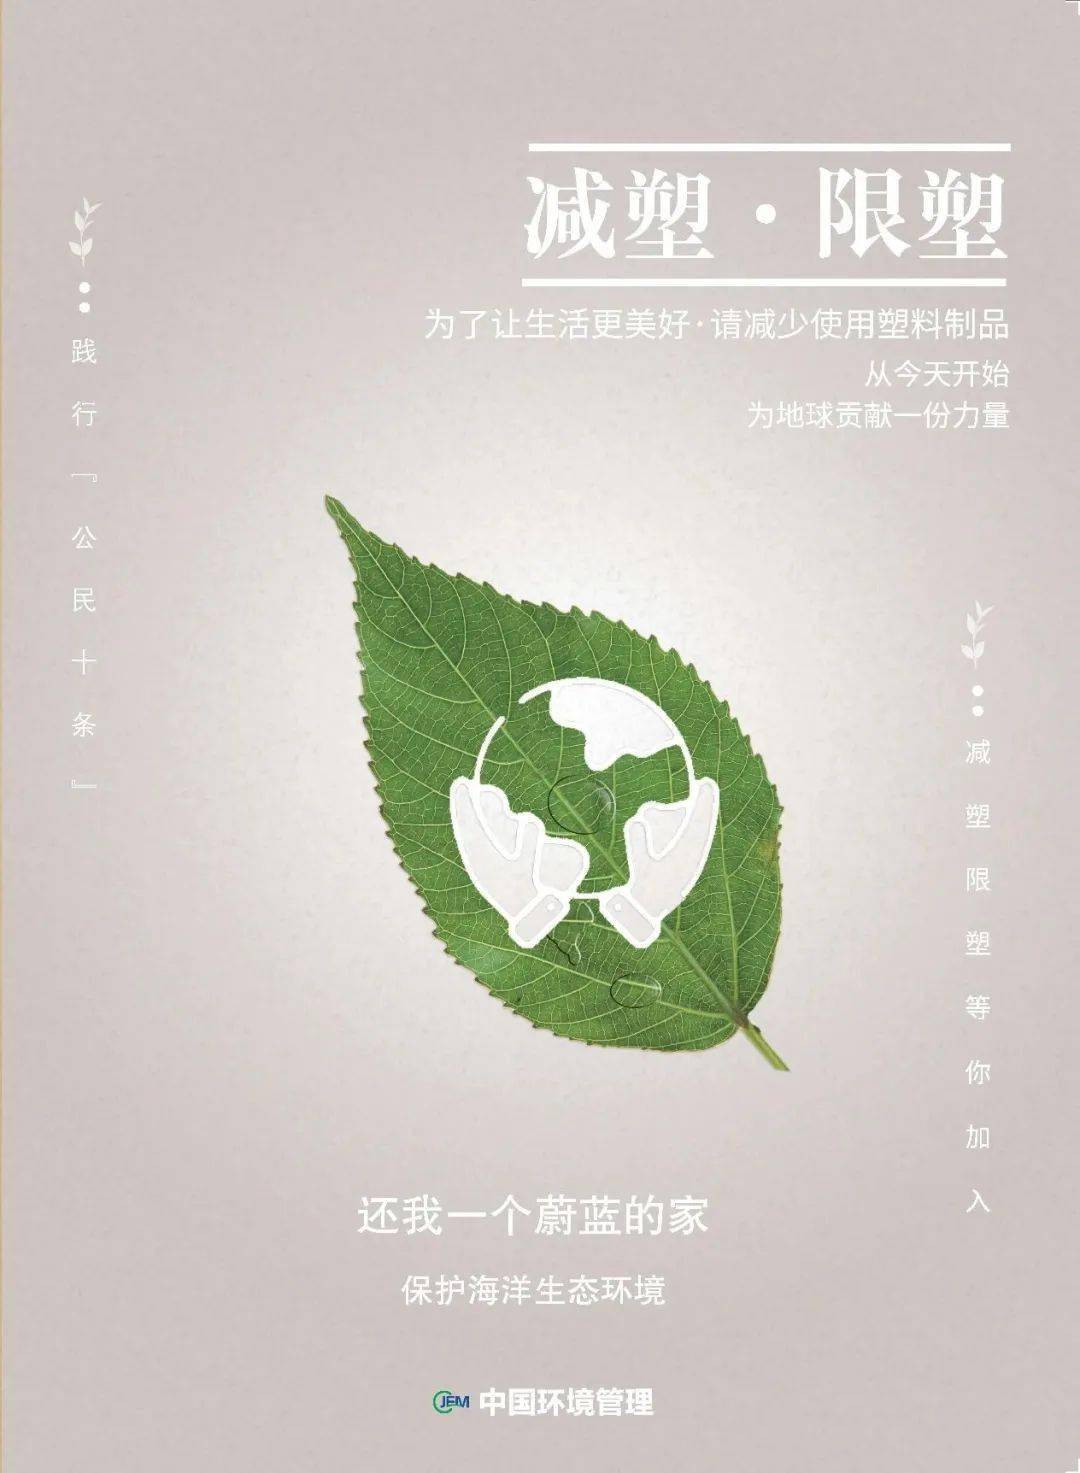 限塑减塑丨为了让生活更美好请减少使用塑料制品67中国环境管理